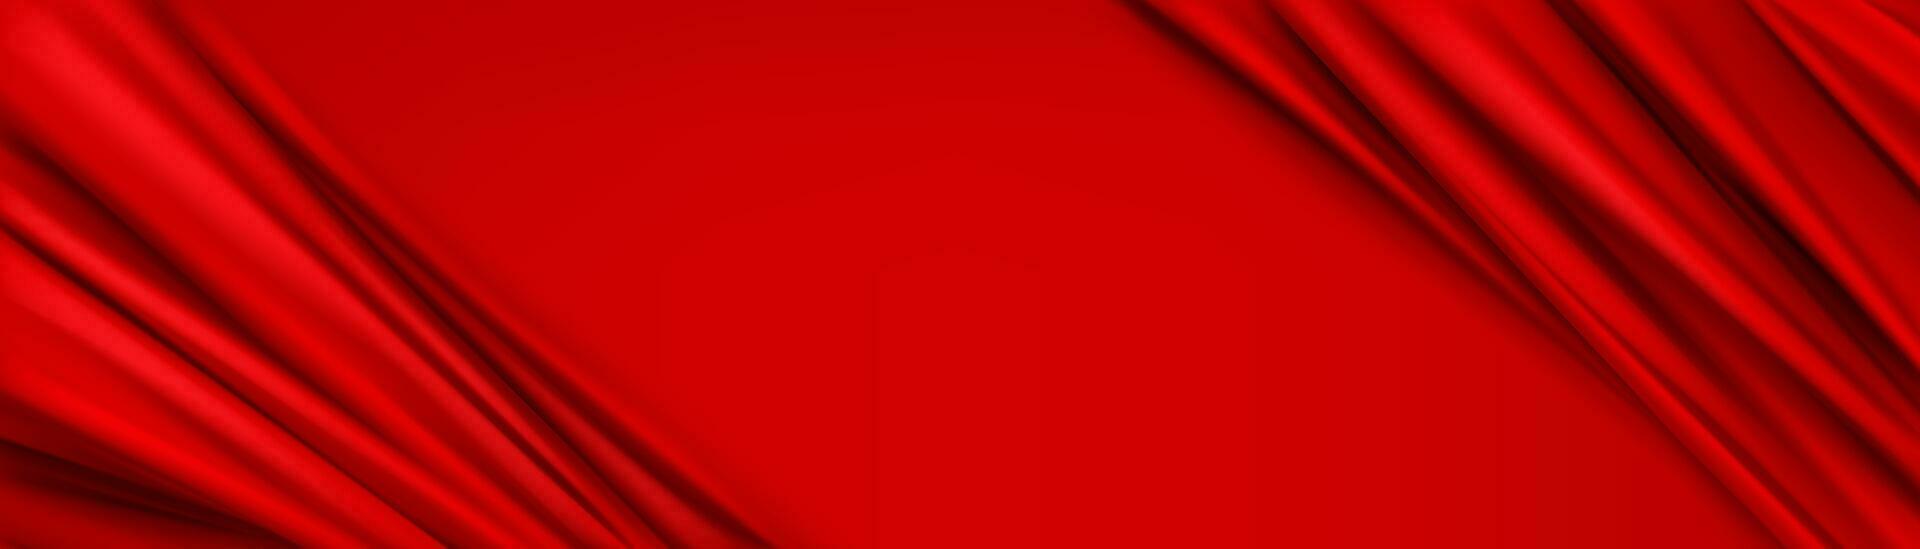 abstract achtergrond met rood zijde kleding stof kader vector